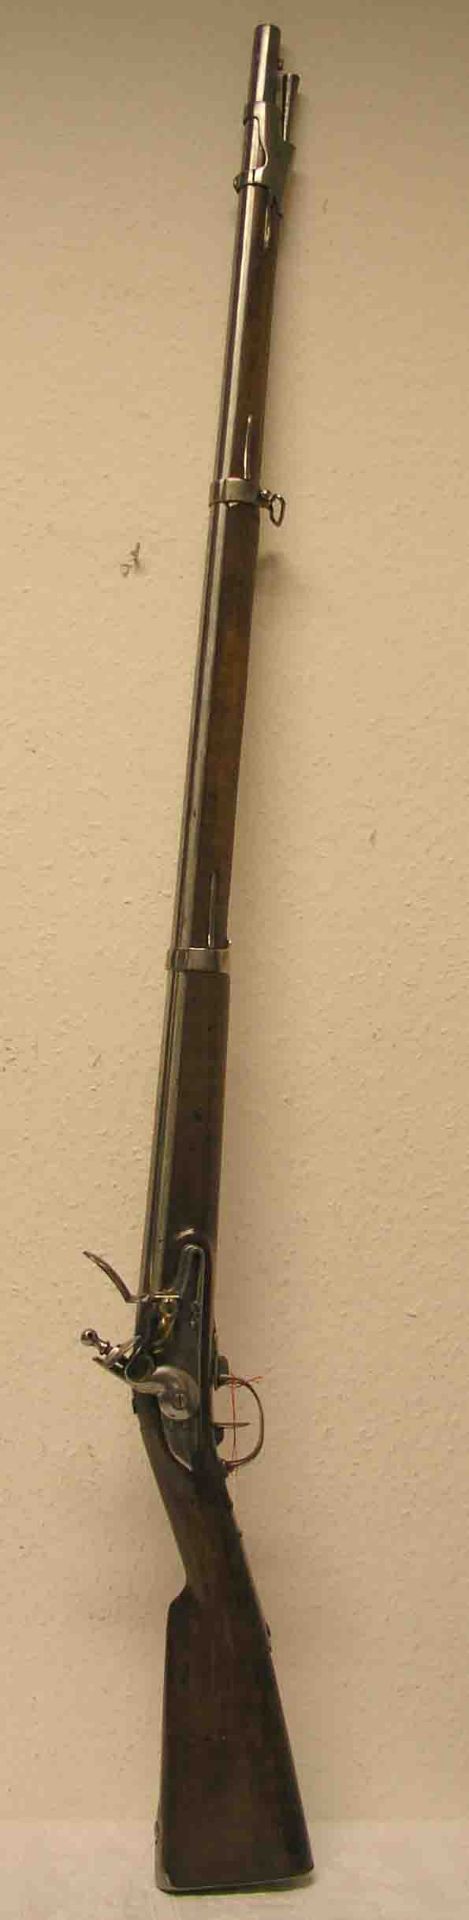 Muskete, 18. Jh., schweres, langes Vorderladergewehr mit glattem Lauf, Steinschloss,